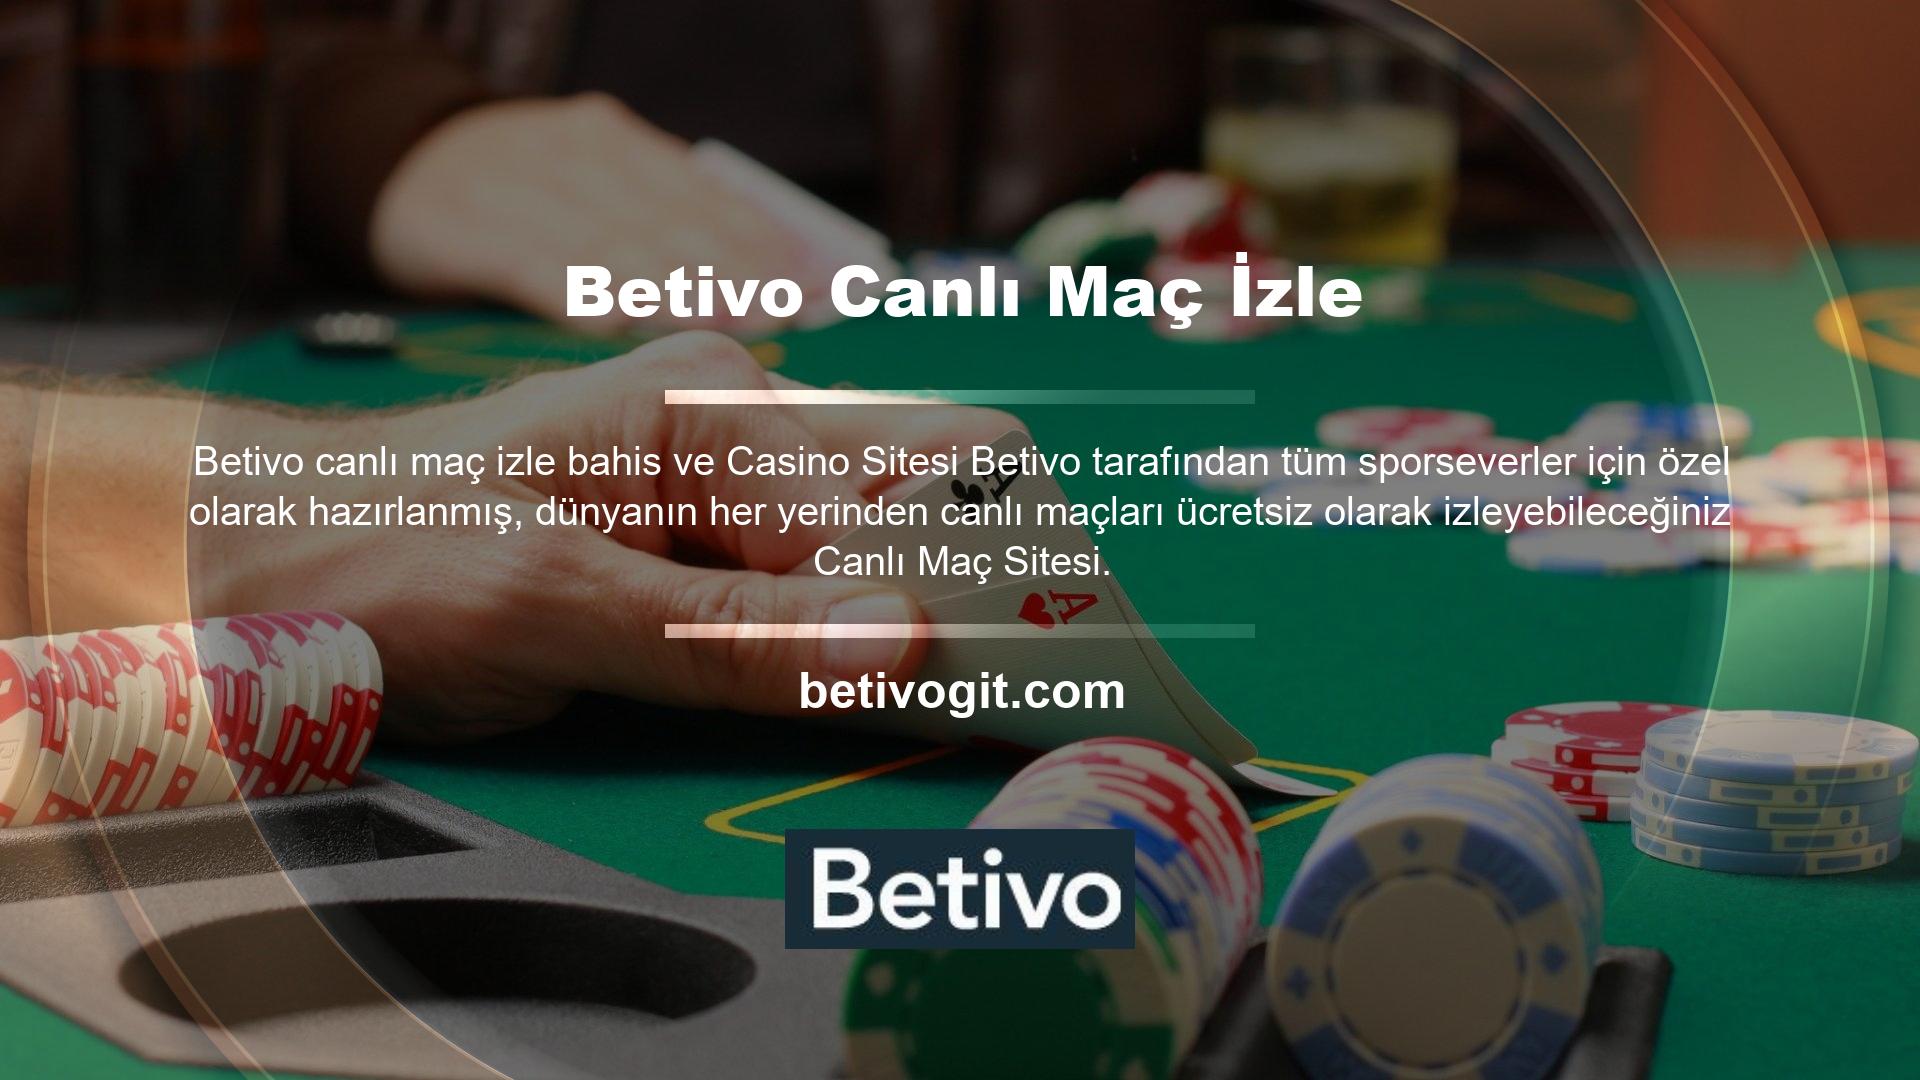 Betivo bahis sitelerinde ve casinolarda canlı spor bahislerini izlemek için kullanabilirsiniz